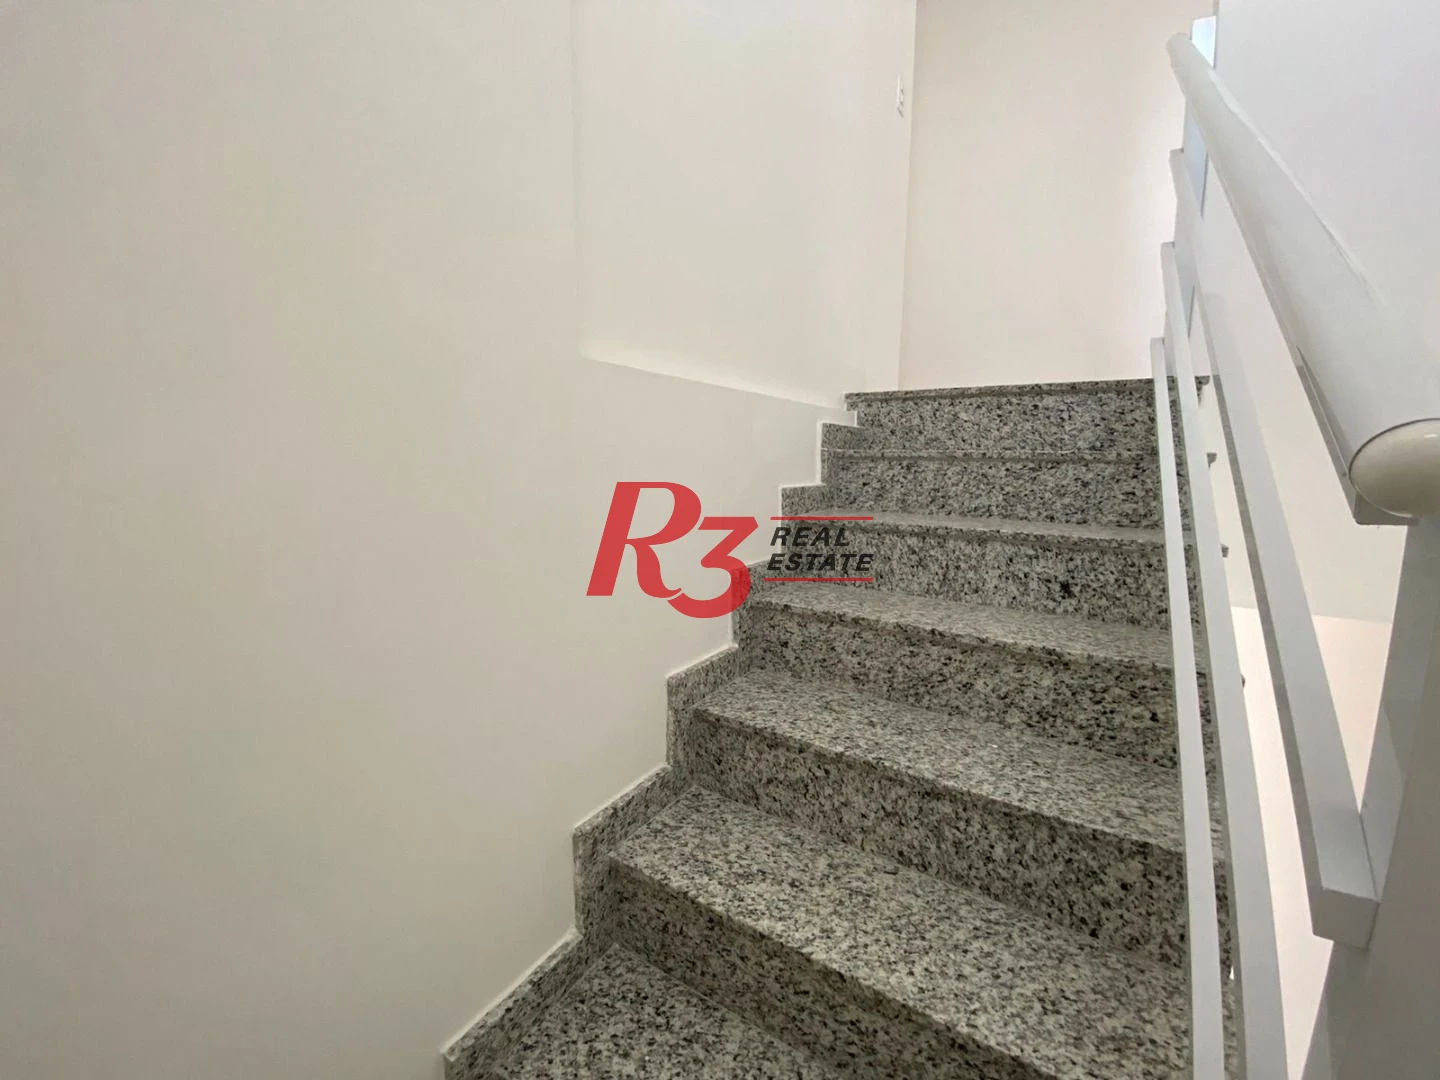 Apartamento Duplex à venda, 131 m² por R$ 949.000,00 - Encruzilhada - Santos/SP